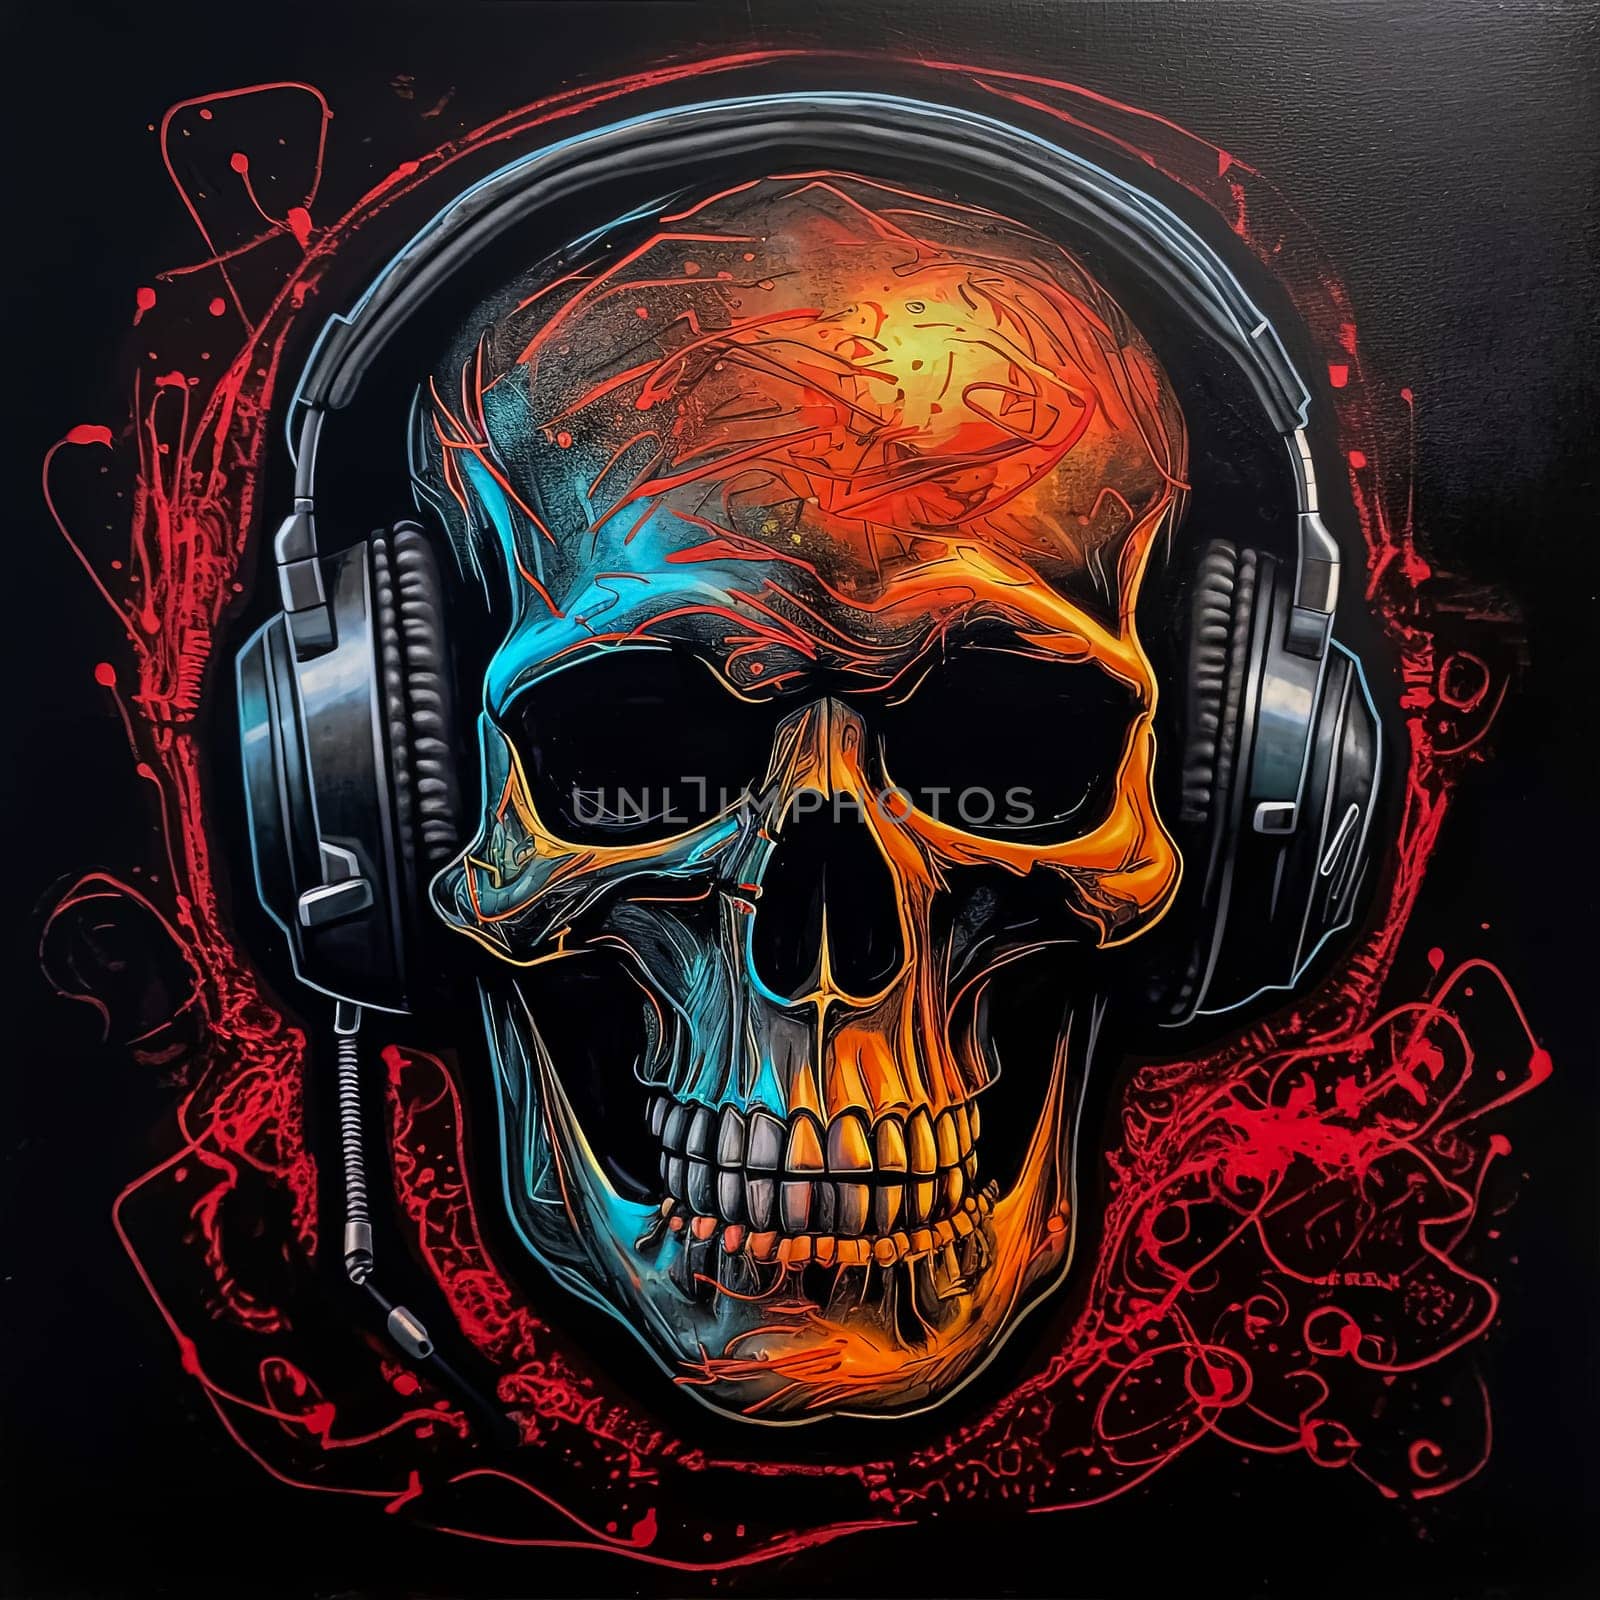 A neon skull with neon colors. by Alla_Morozova93